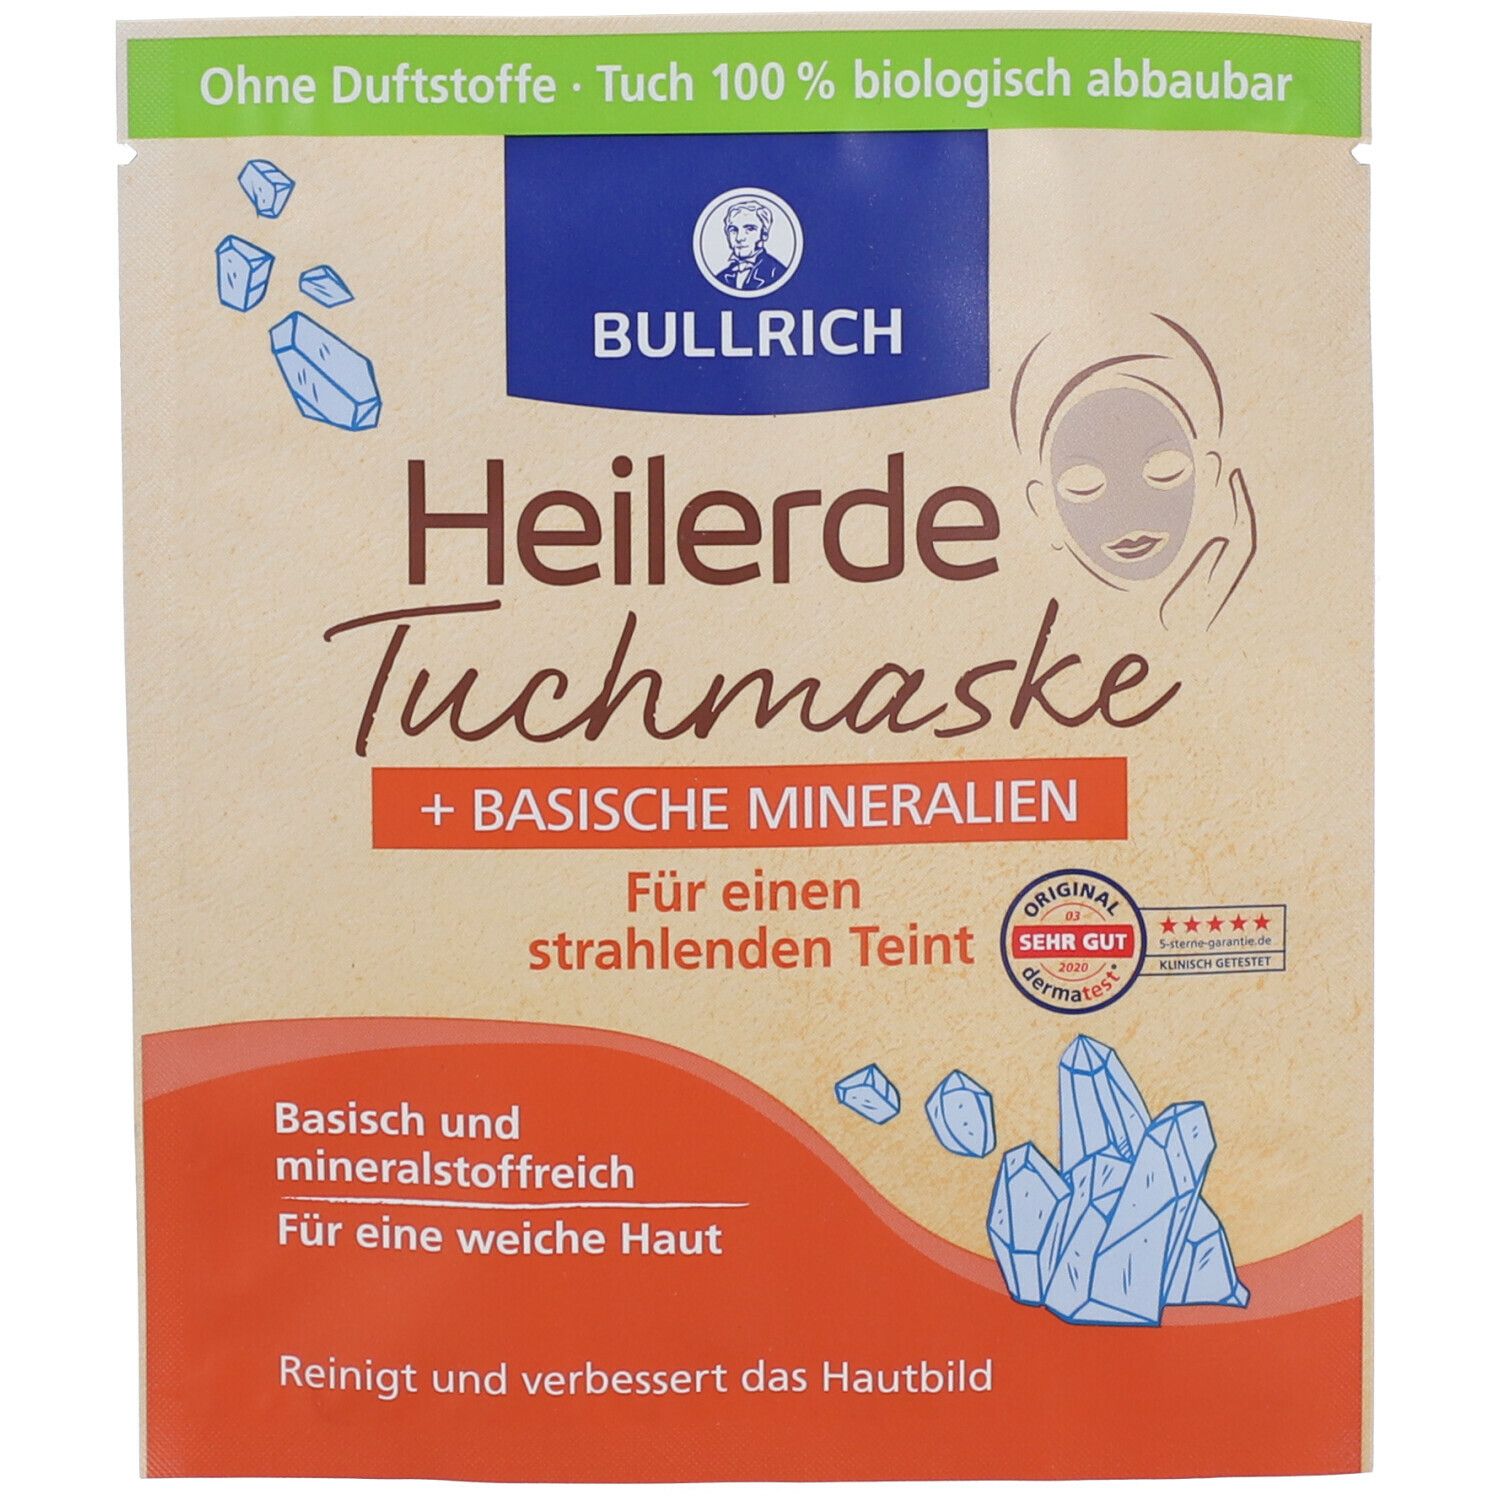 BULLRICH Heilerde Tuchmaske + basische Mineralien